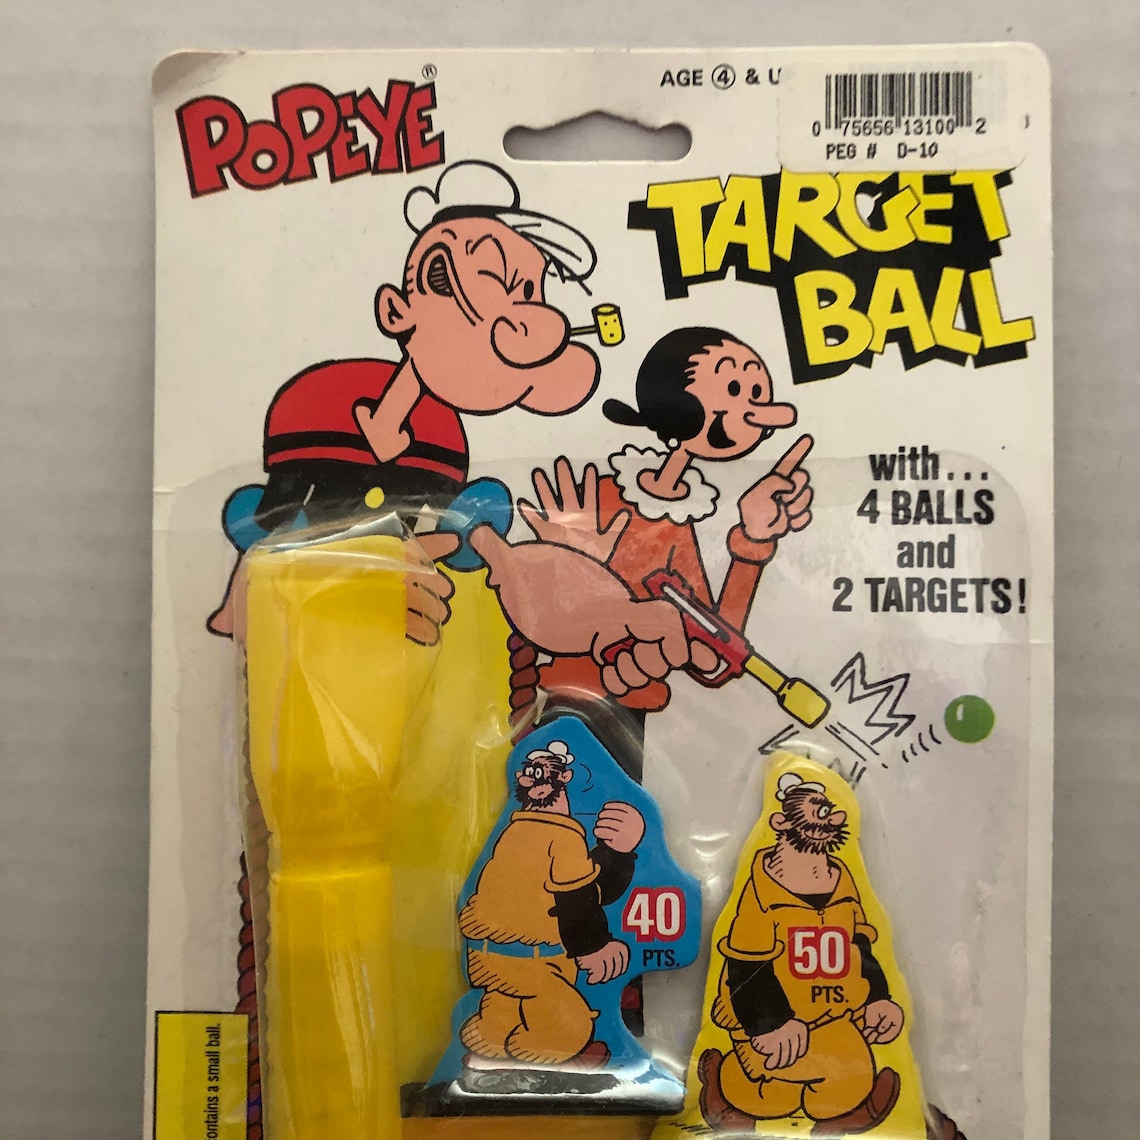 Popeye Target Ball Game 1996 | Etsy